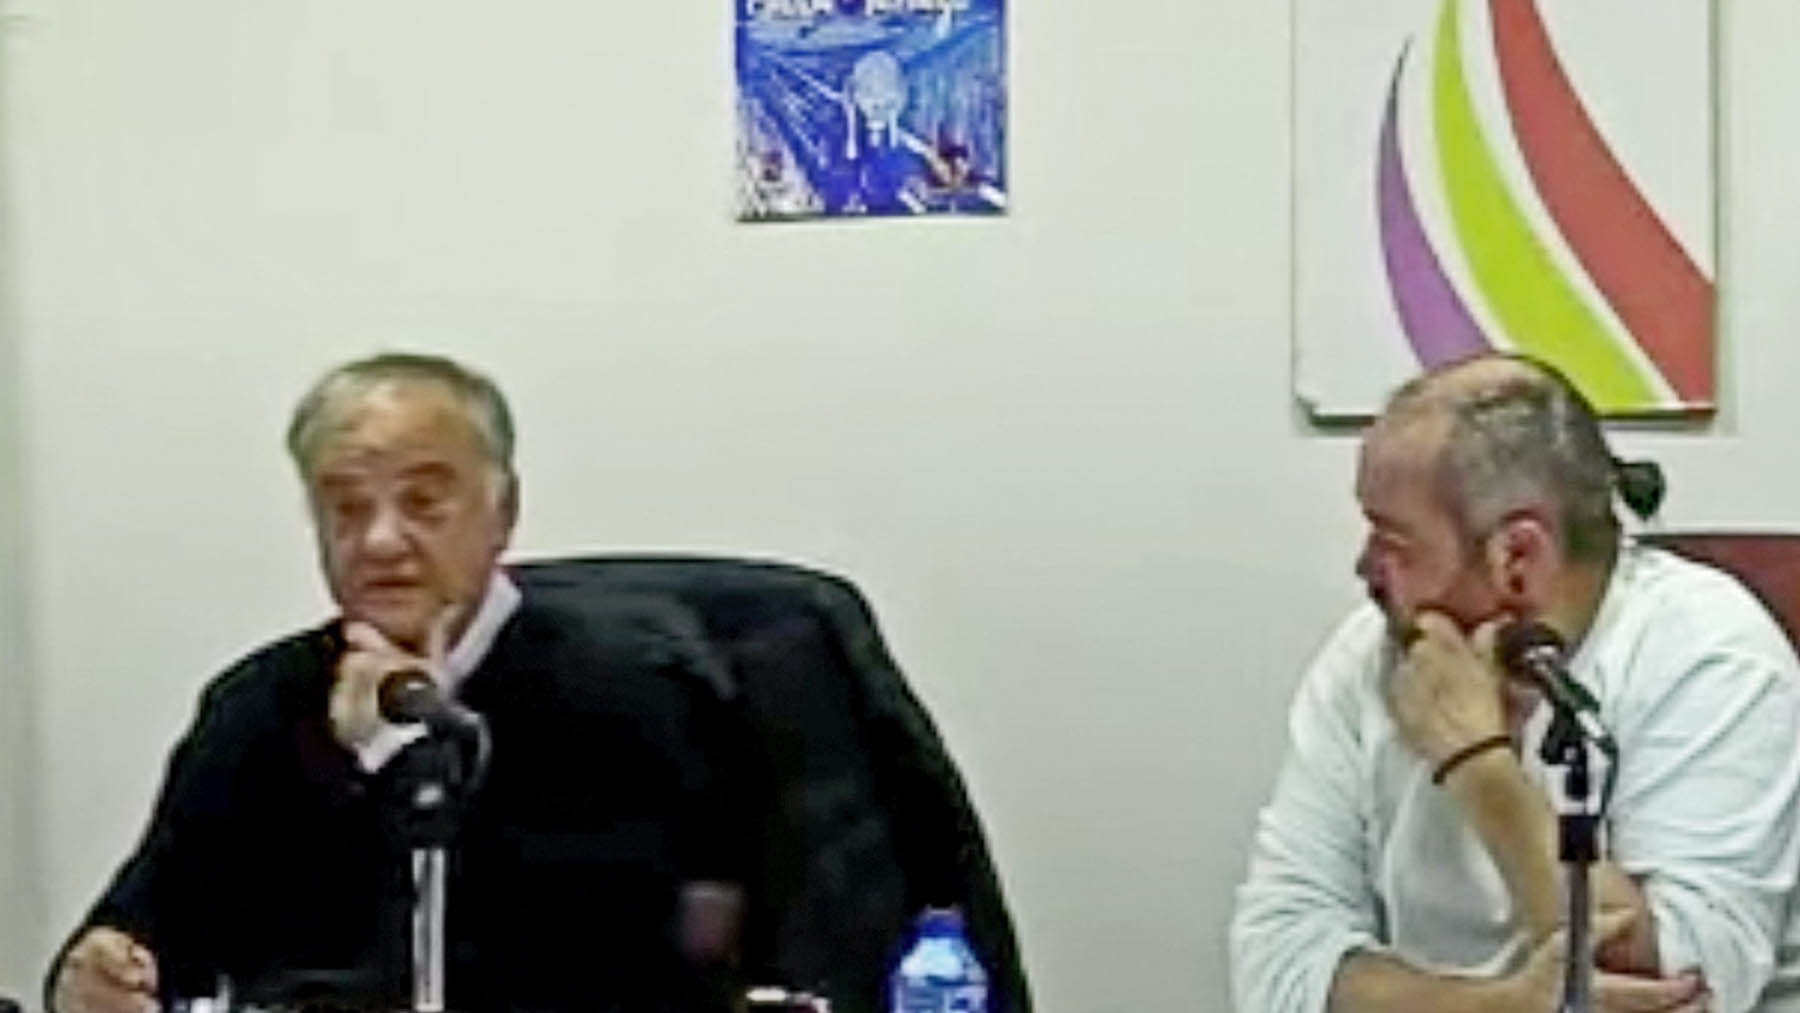 El juez Ramón Sáez en una charla en noviembre de 2019. (Imagen: Recuerdo y Dignidad vía YouTube)